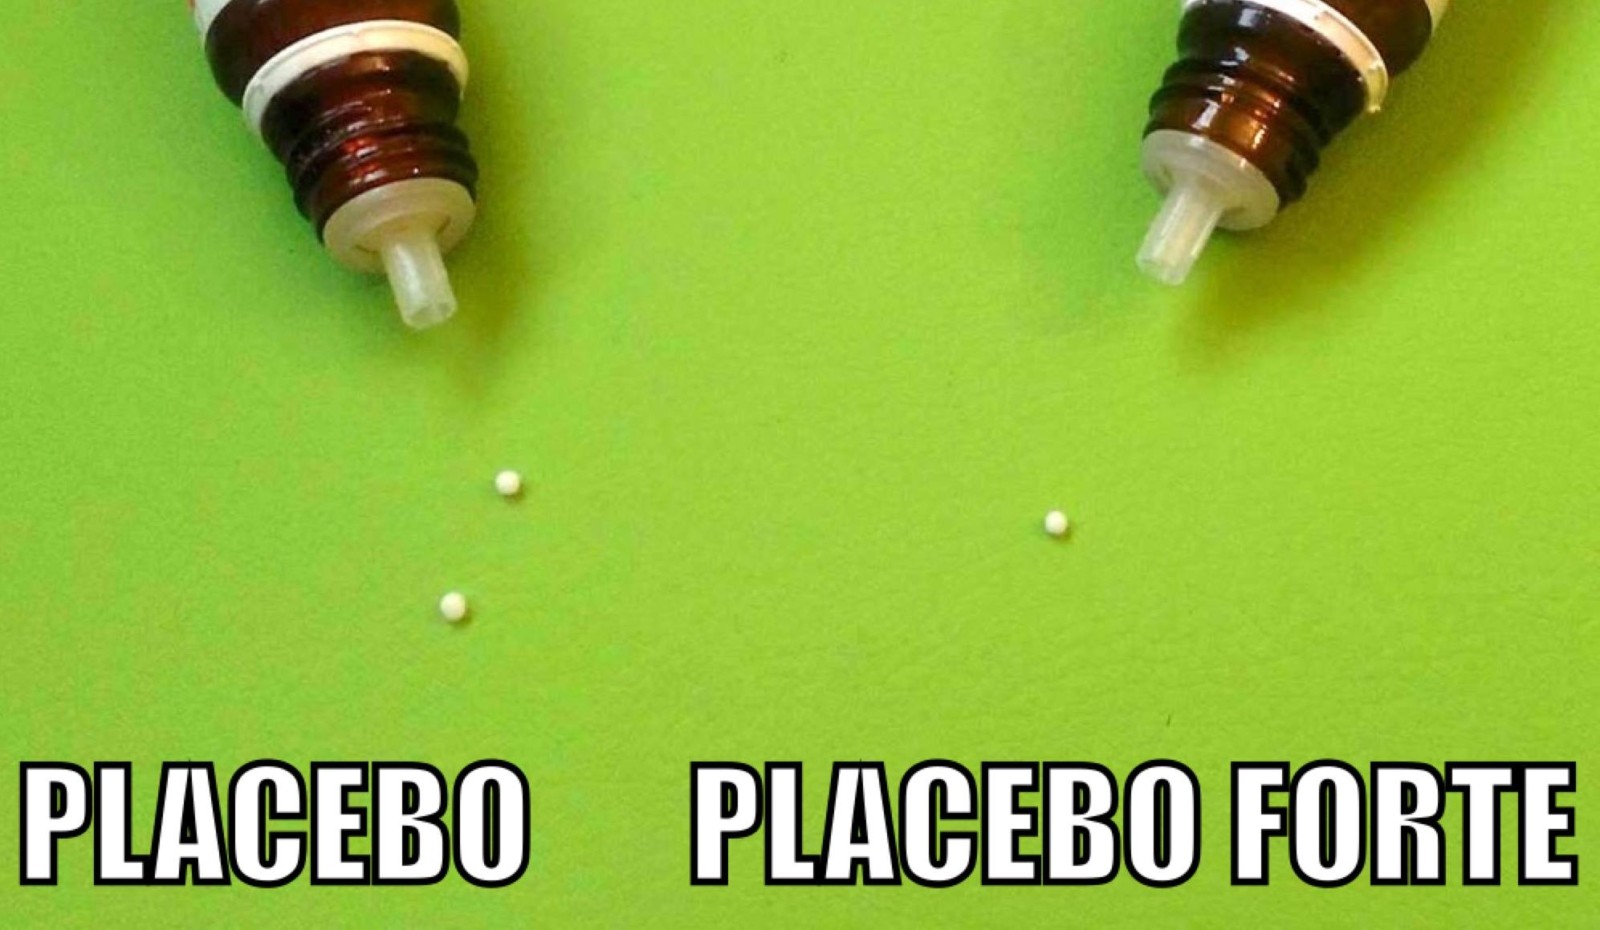 Homöopathie – das Geschäft mit dem Placebo